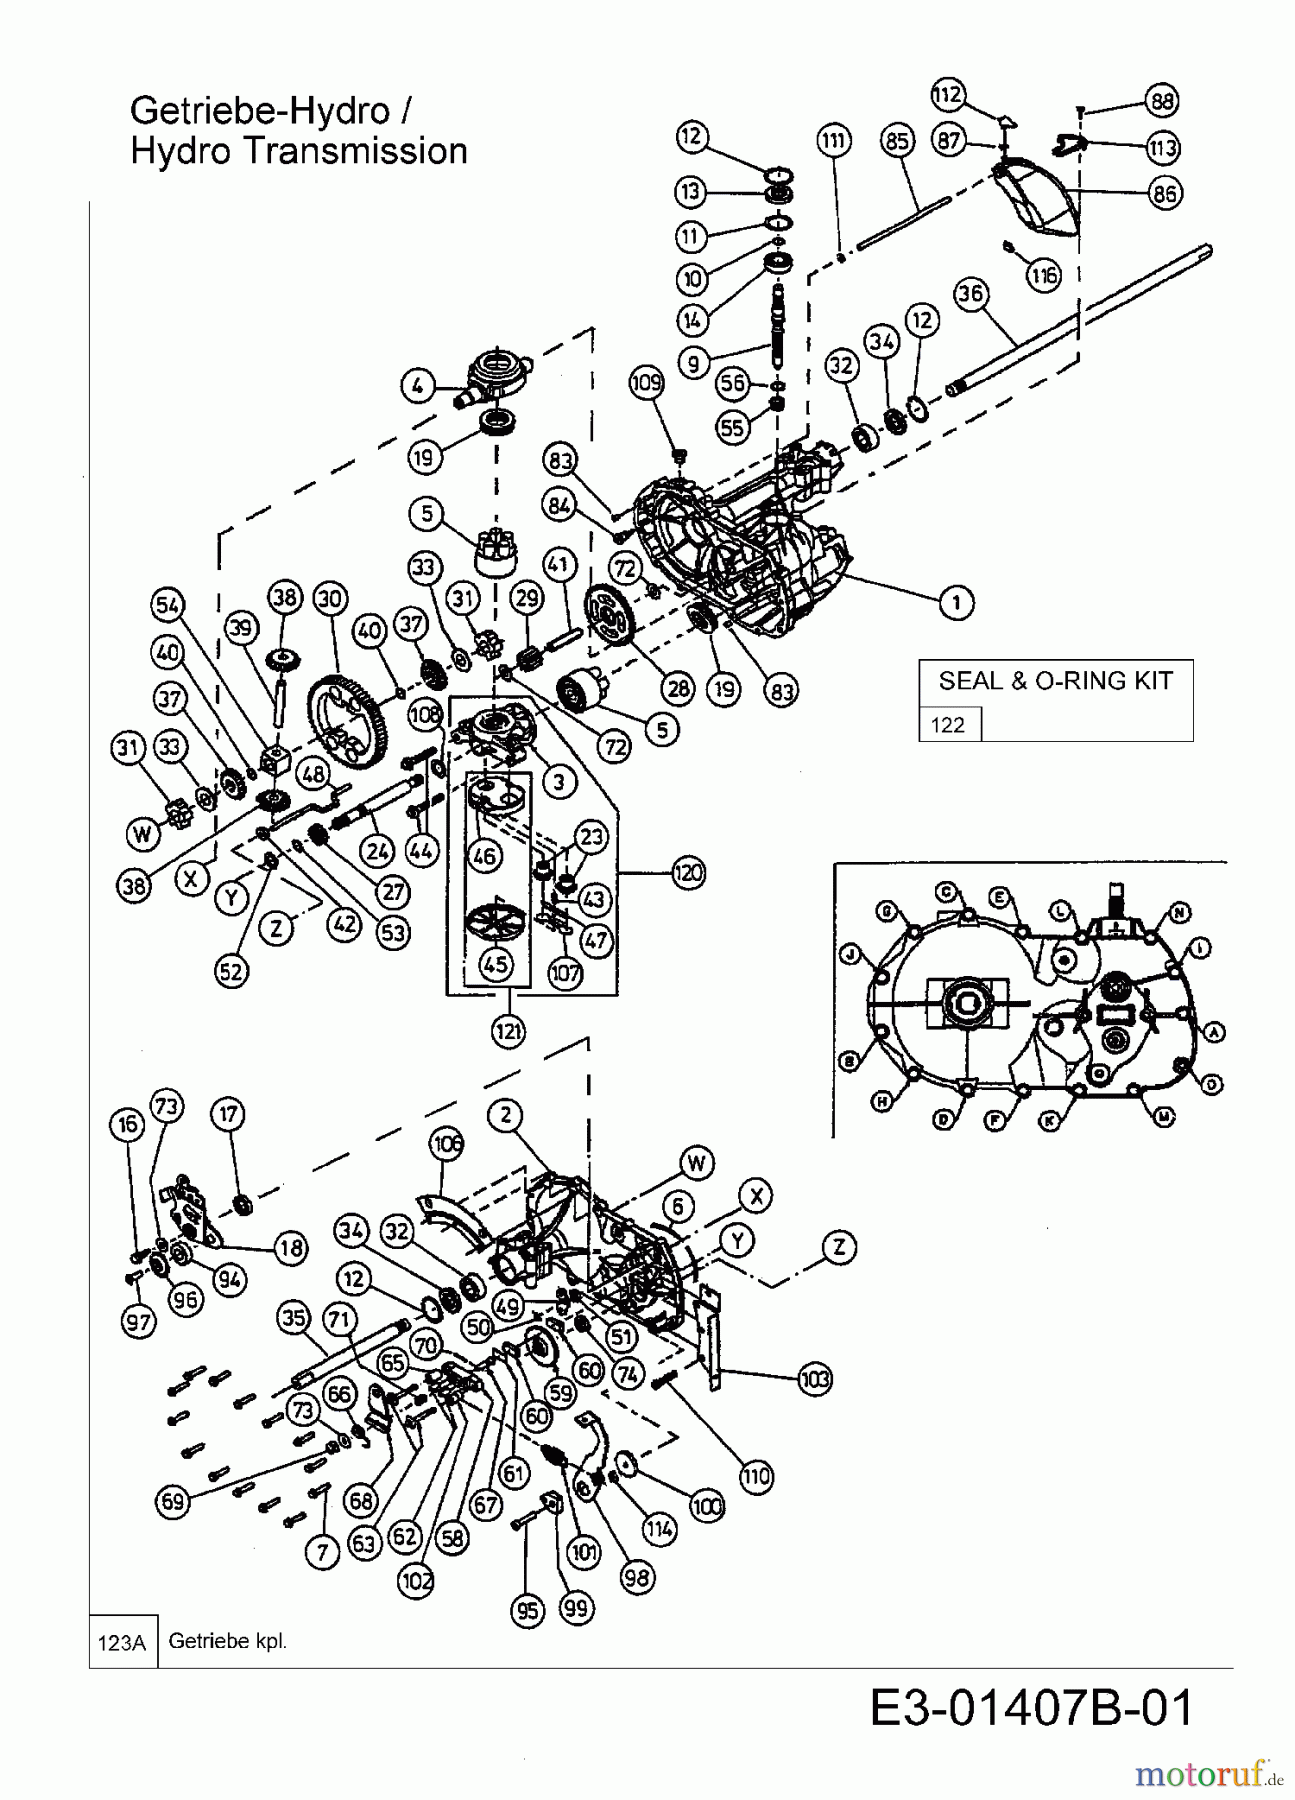  Efco Lawn tractors Formula 107 H 13BA519G637  (2004) Hydrostatic gearbox